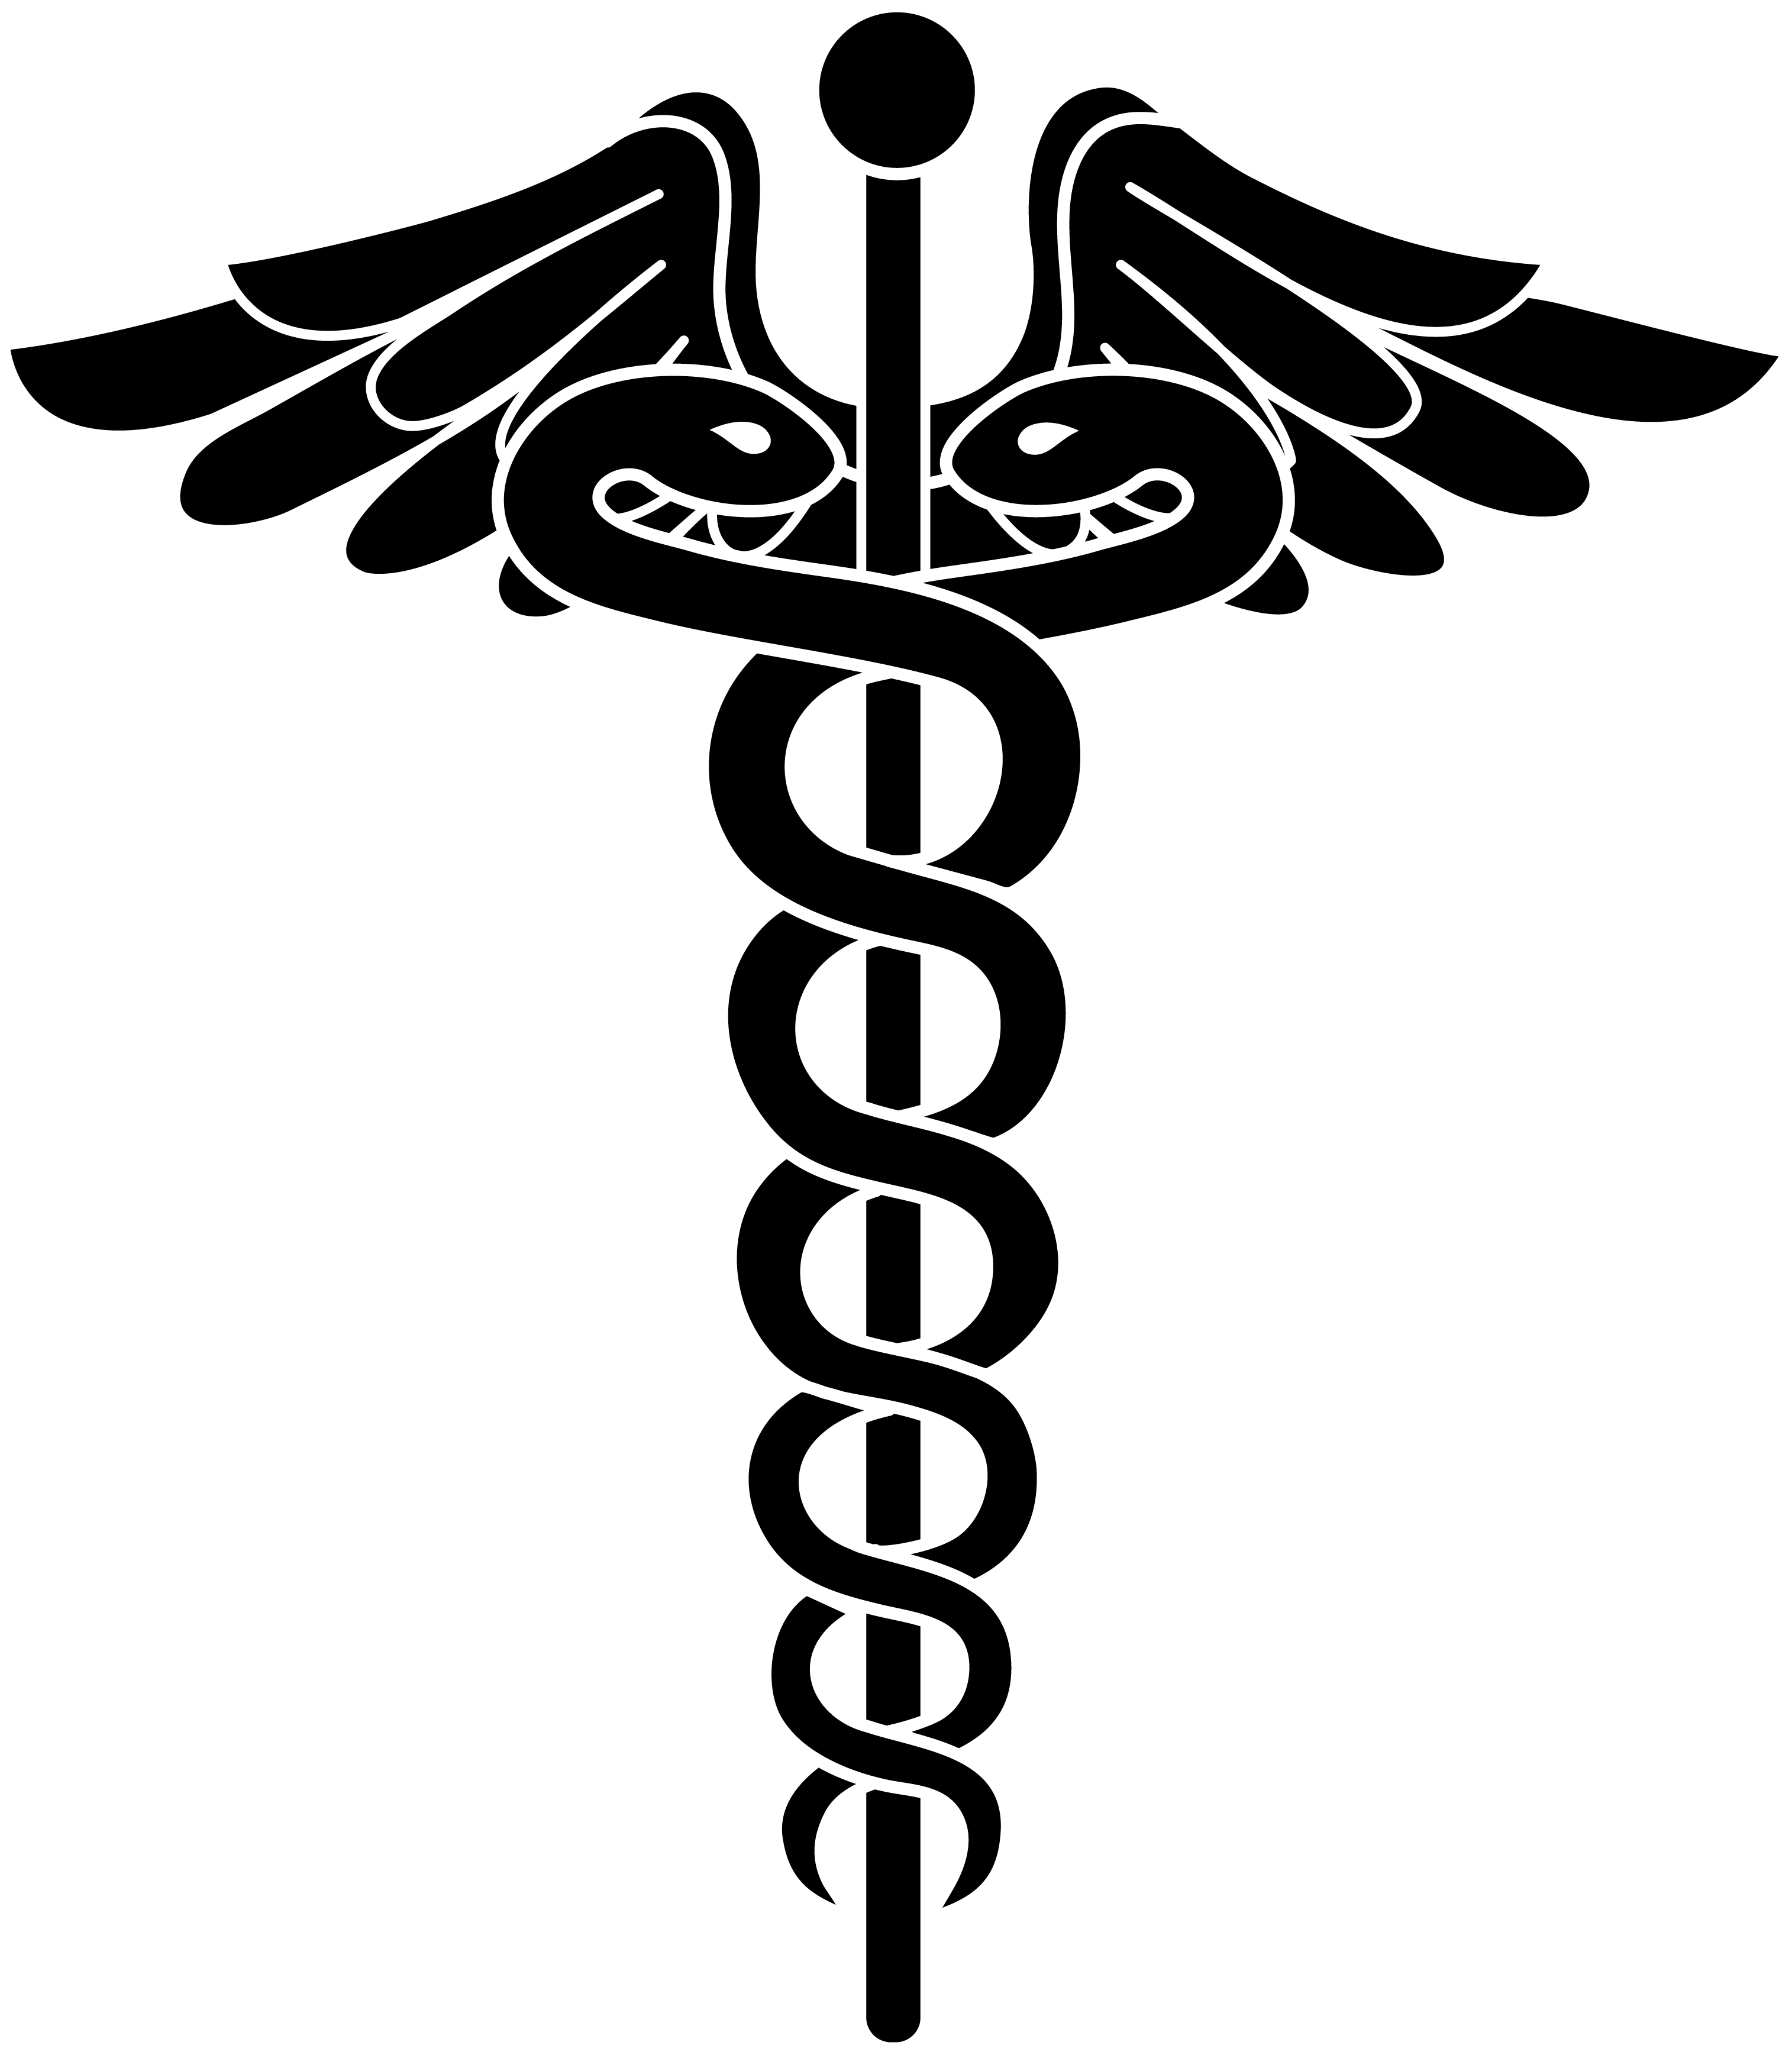 clip art medical logo - photo #16